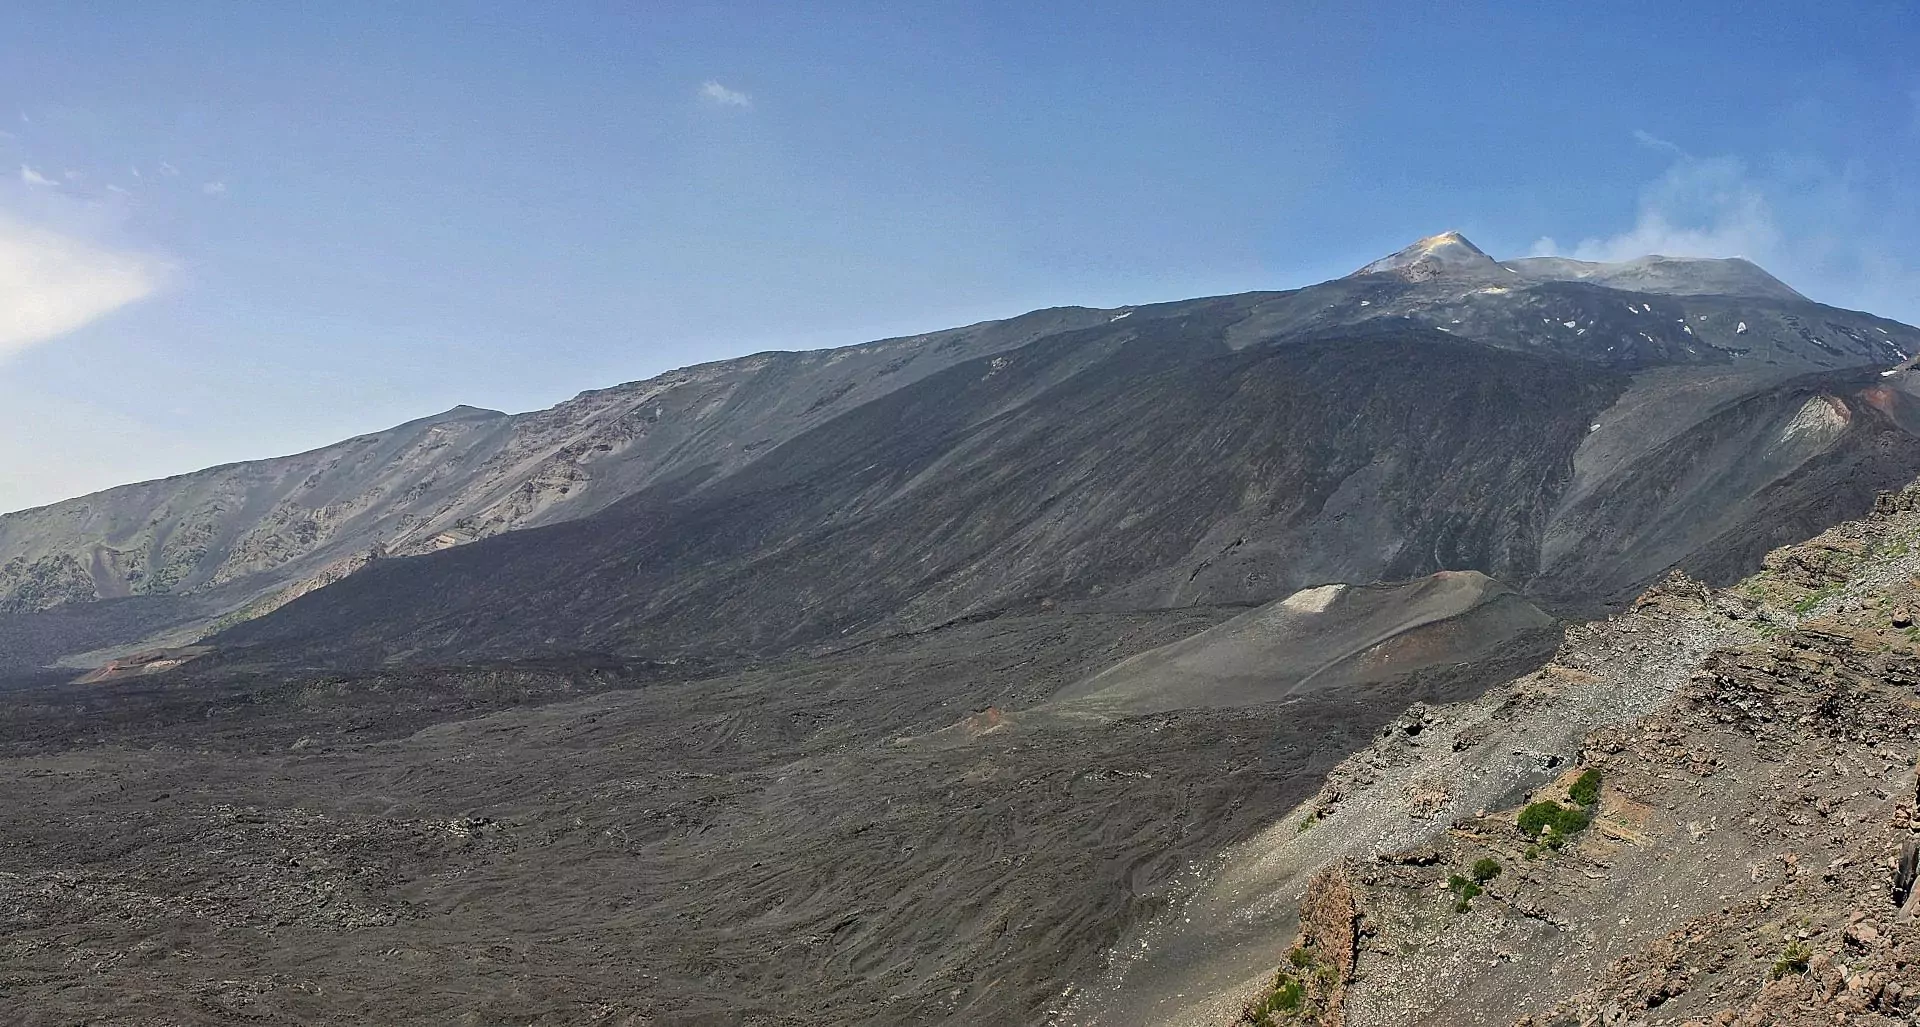 De Valle del Bove: een enorme inkeping aan de oostkant van de Etna, ontstaan door het instorten van de voormalige top